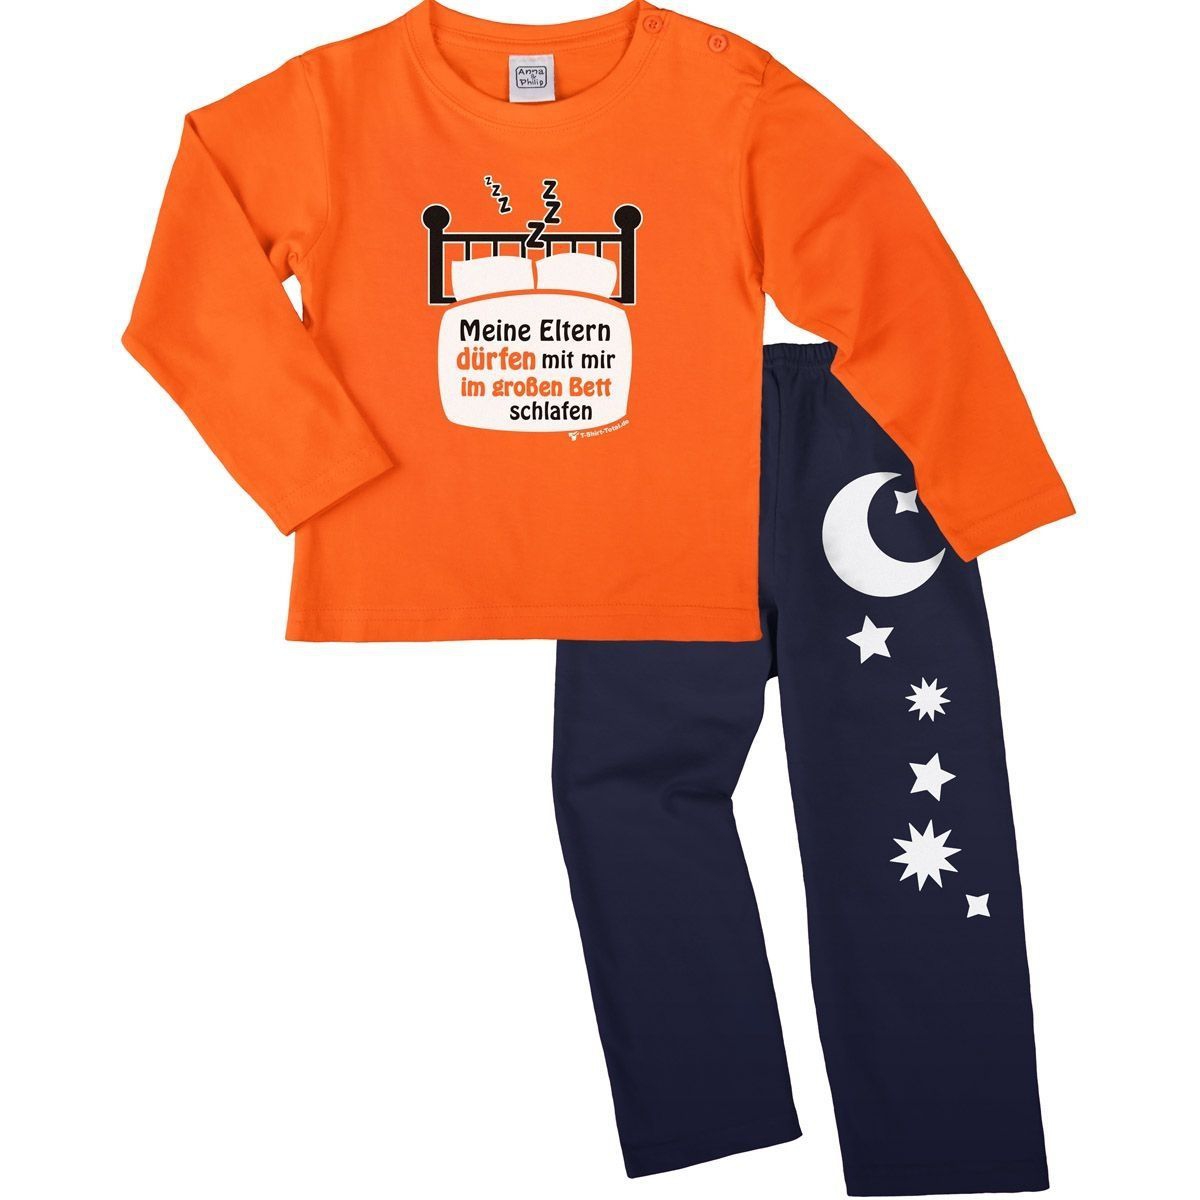 Im großen Bett schlafen Pyjama Set orange / navy 92